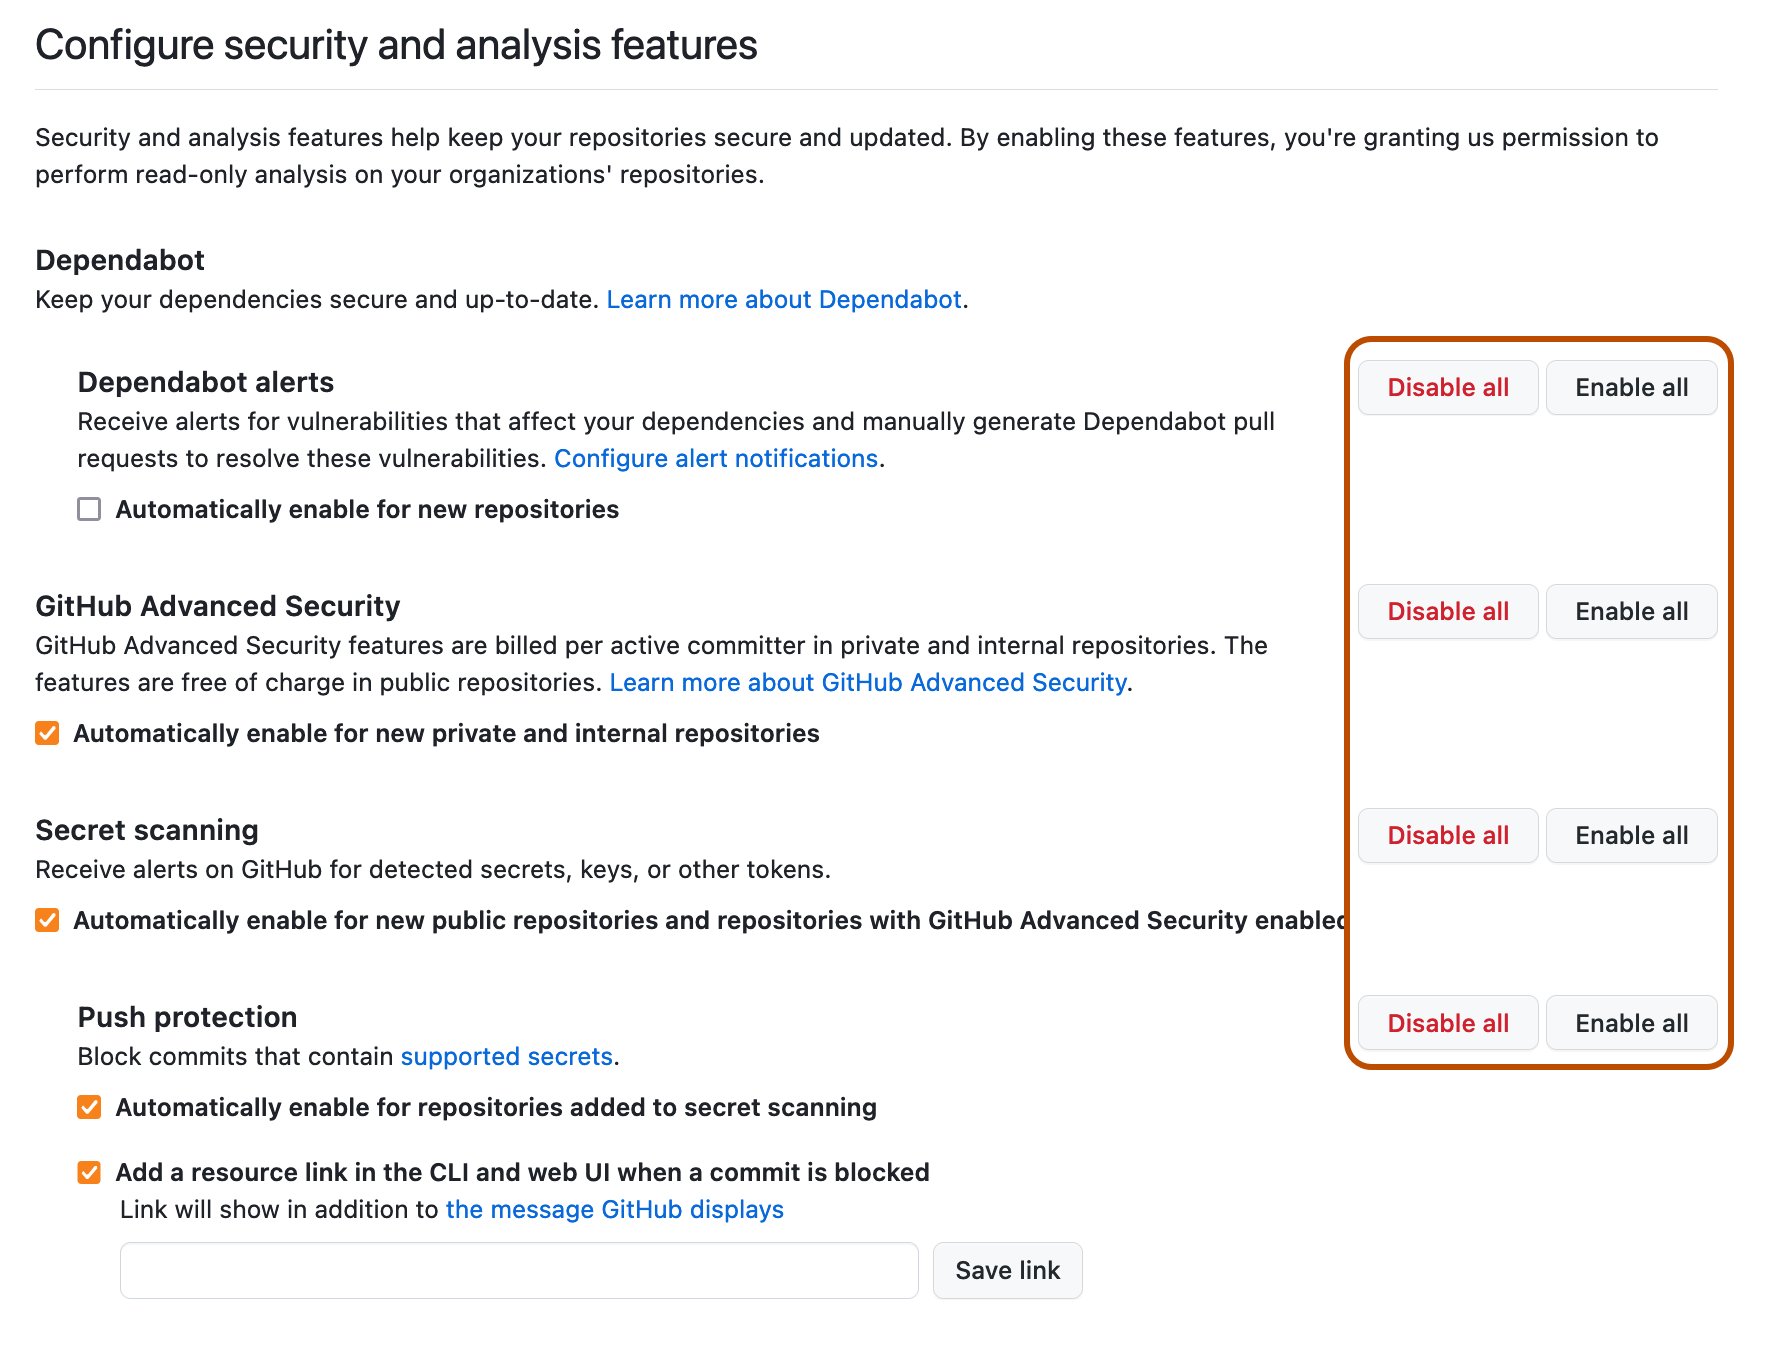 Captura de tela de "Configurar segurança e análise" com os botões "Habilitar tudo" ou "Desabilitar tudo"